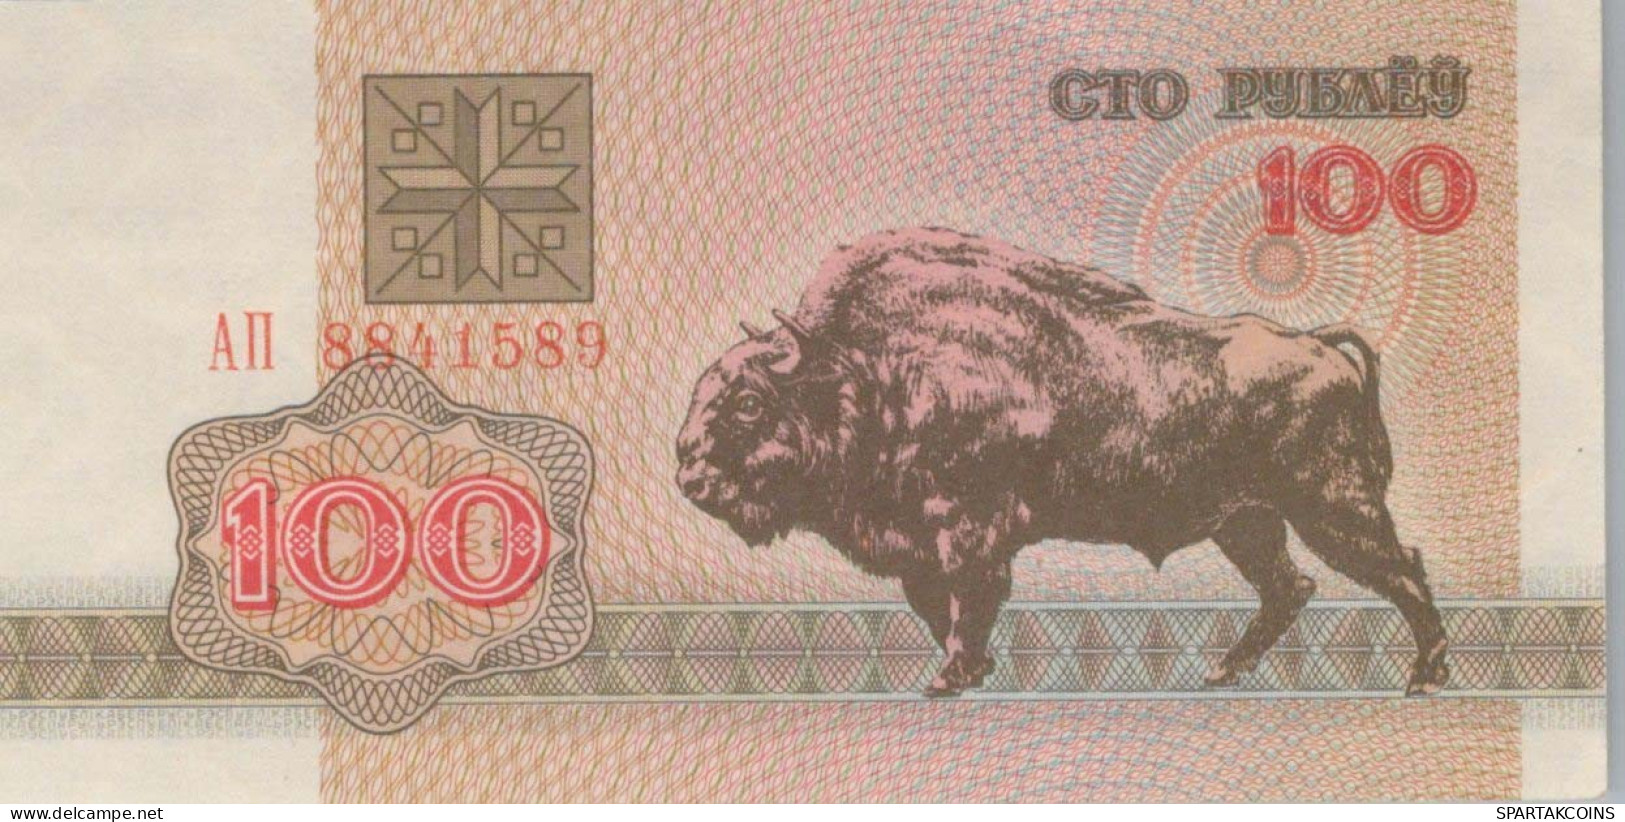 100 RUBLES 1992 BELARUS Papiergeld Banknote #PJ284 - Lokale Ausgaben